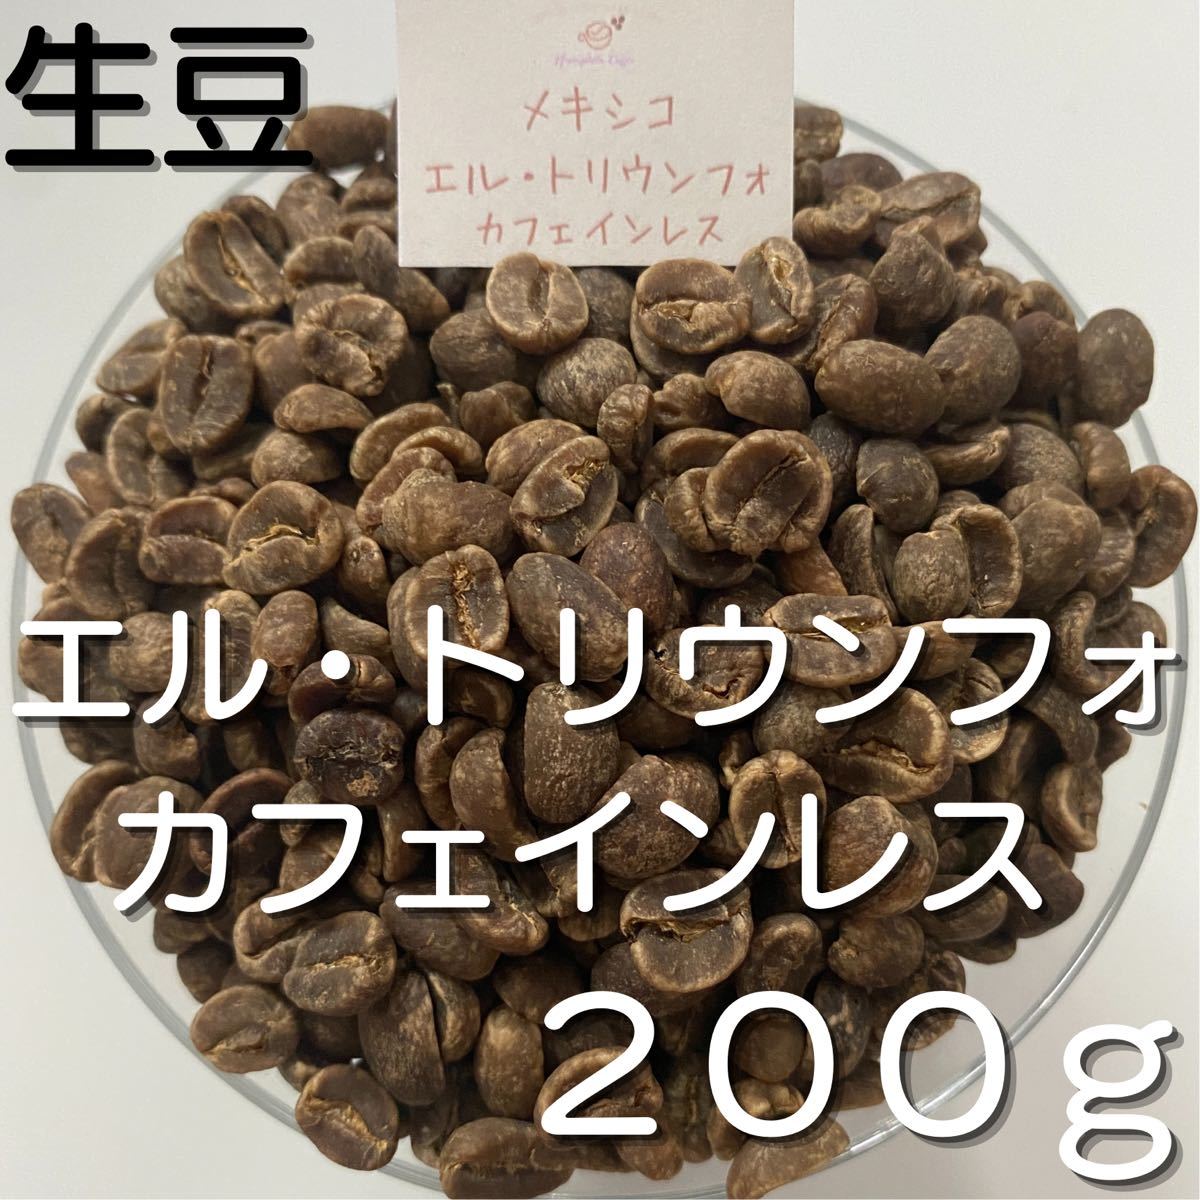 【コーヒー生豆】エル・トリウンフォ カフェインレス 200g